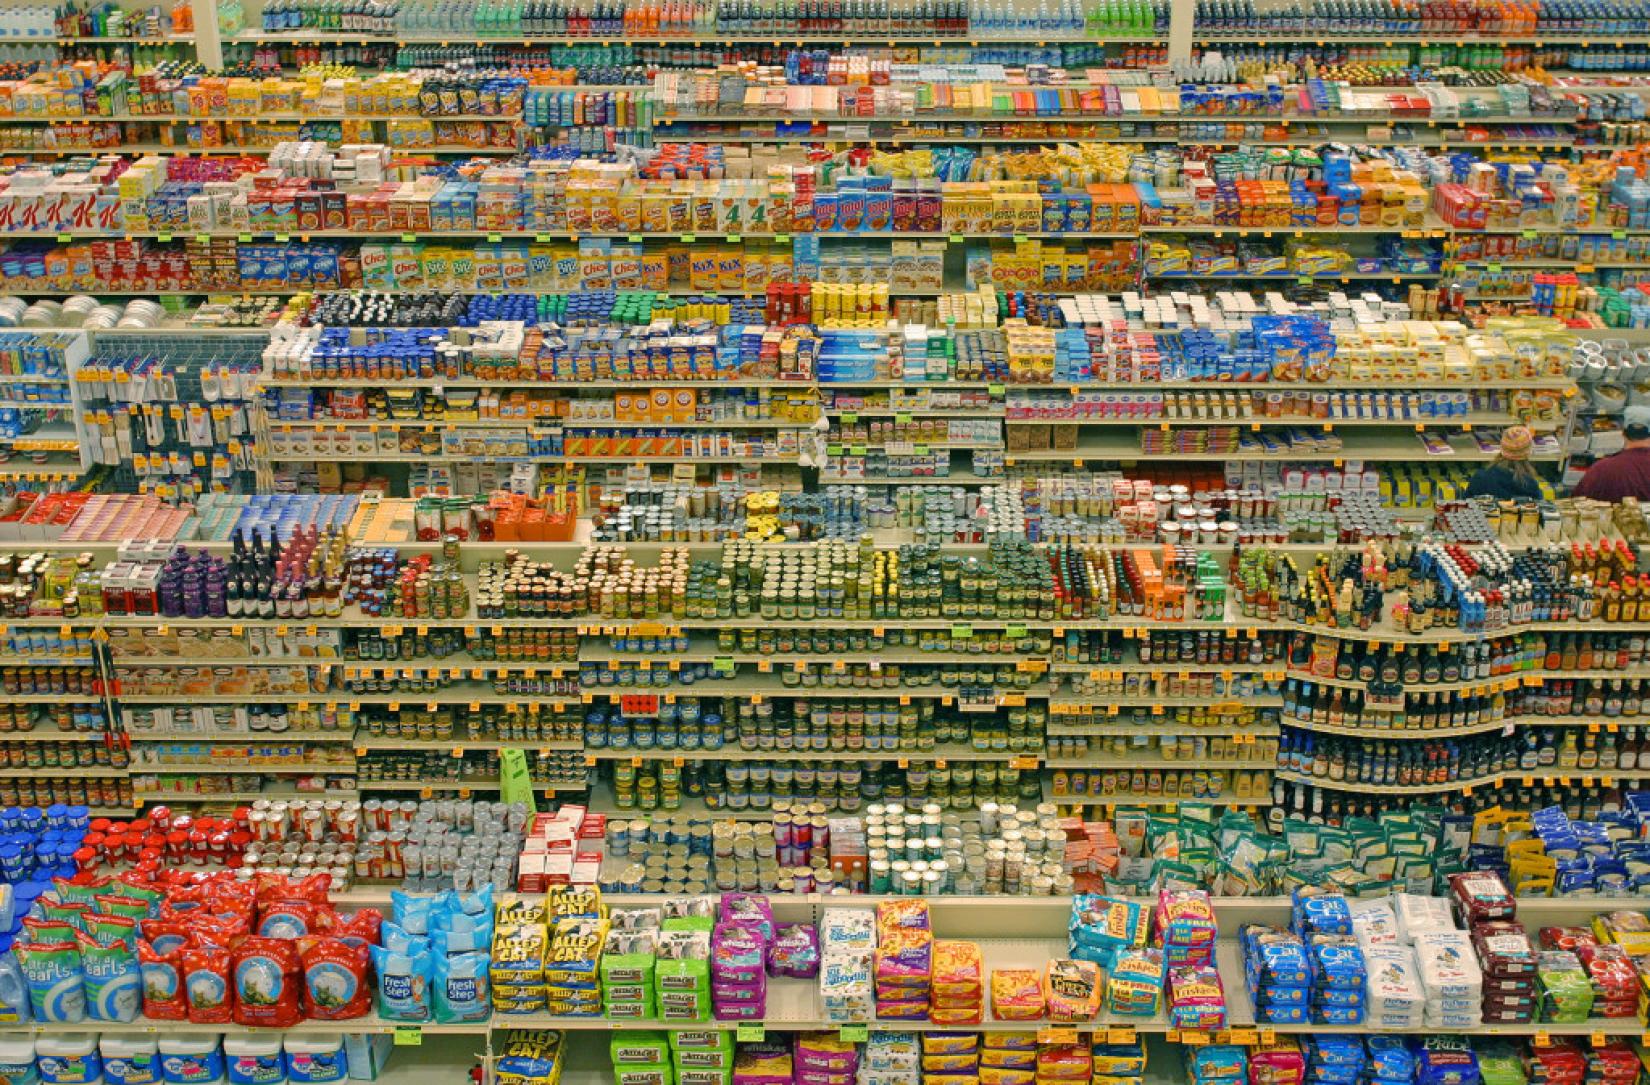 Consumo de produtos industrializados em países das Américas estaria ligado a taxas crescentes de sobrepeso, obesidade e doenças crônicas, como diabetes, câncer e doenças do coração. Foto: WikiCommons/lyzadanger/Diliff